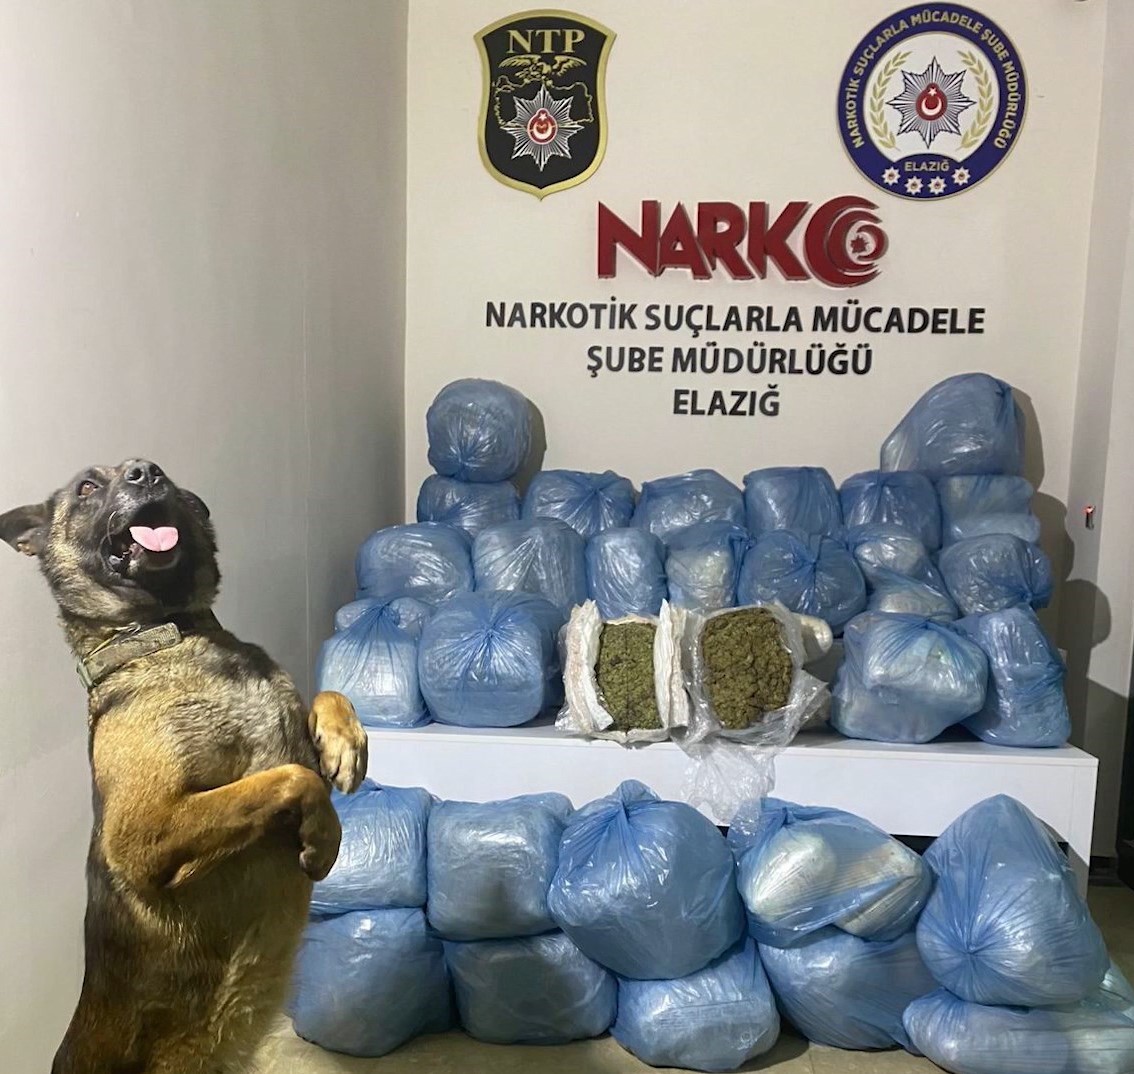 Elazığ'da 123 kilo uyuşturucu madde ele geçirildi: 11 tutuklama